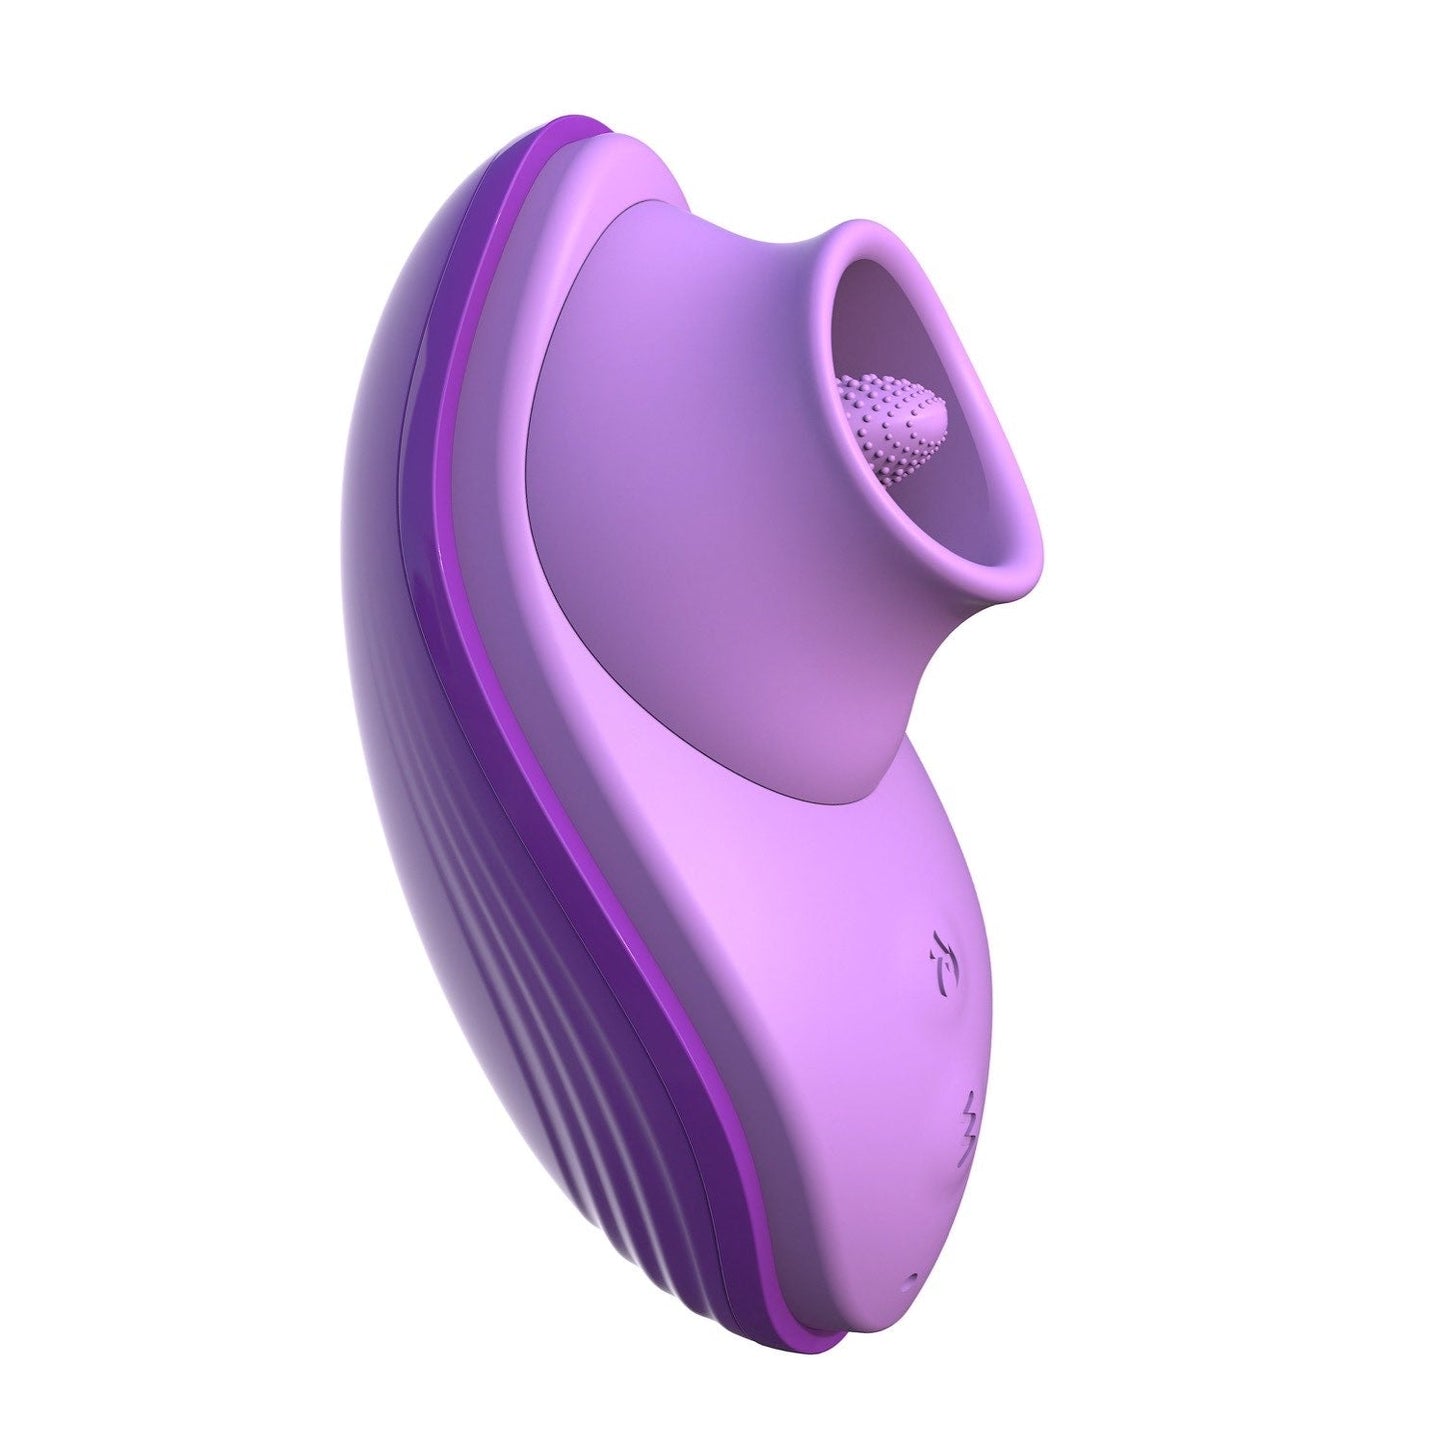 硅胶趣味舌头 - 紫色 USB 可充电弹跳刺激器